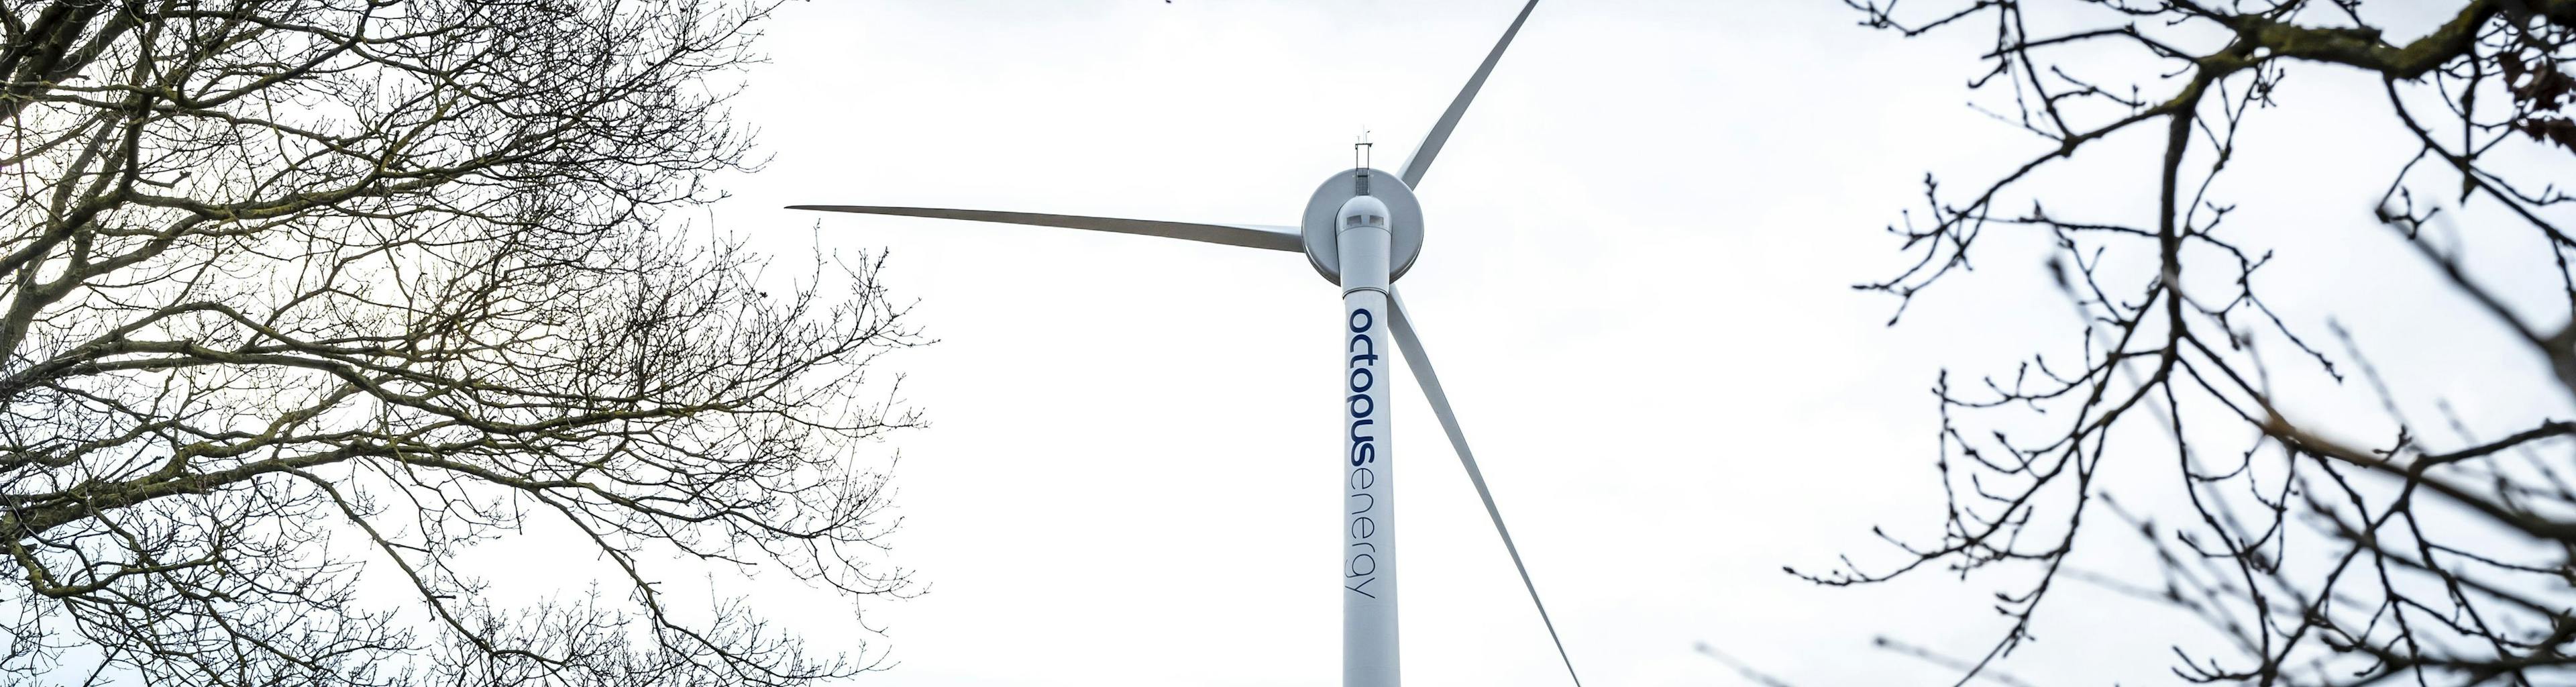 オクトパスエナジー所有の風車